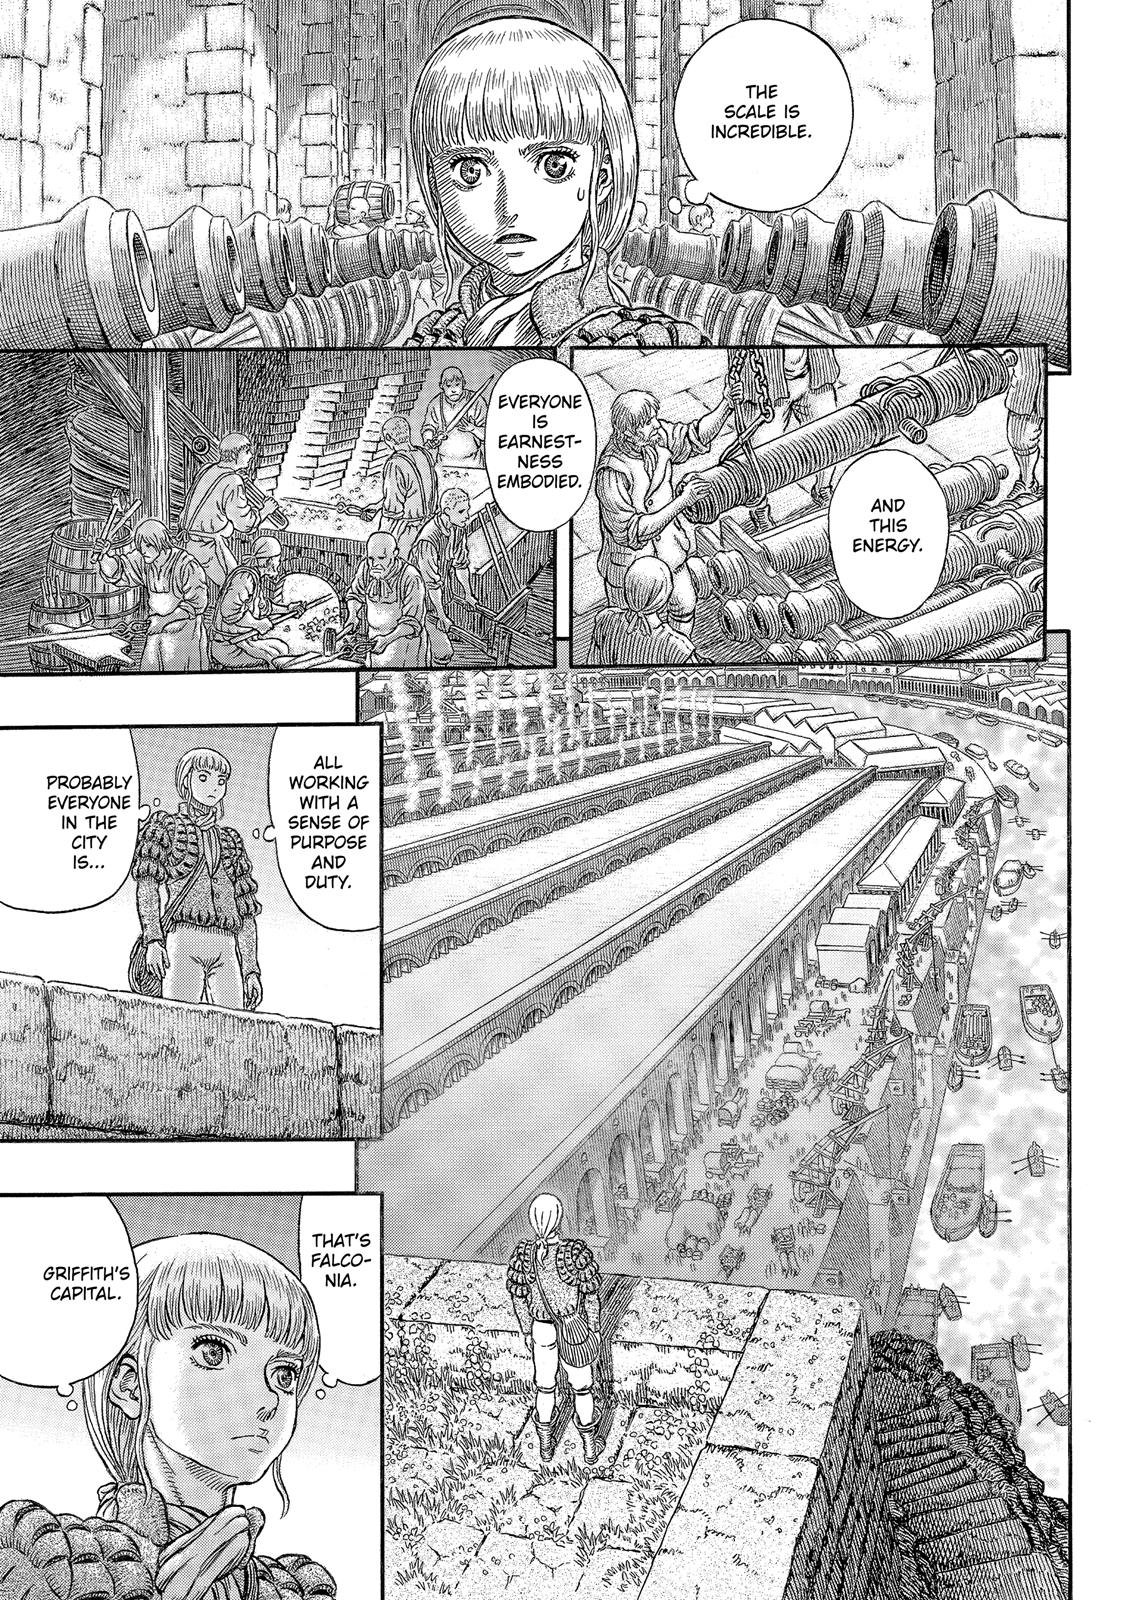 Berserk Manga Chapter 338 image 14